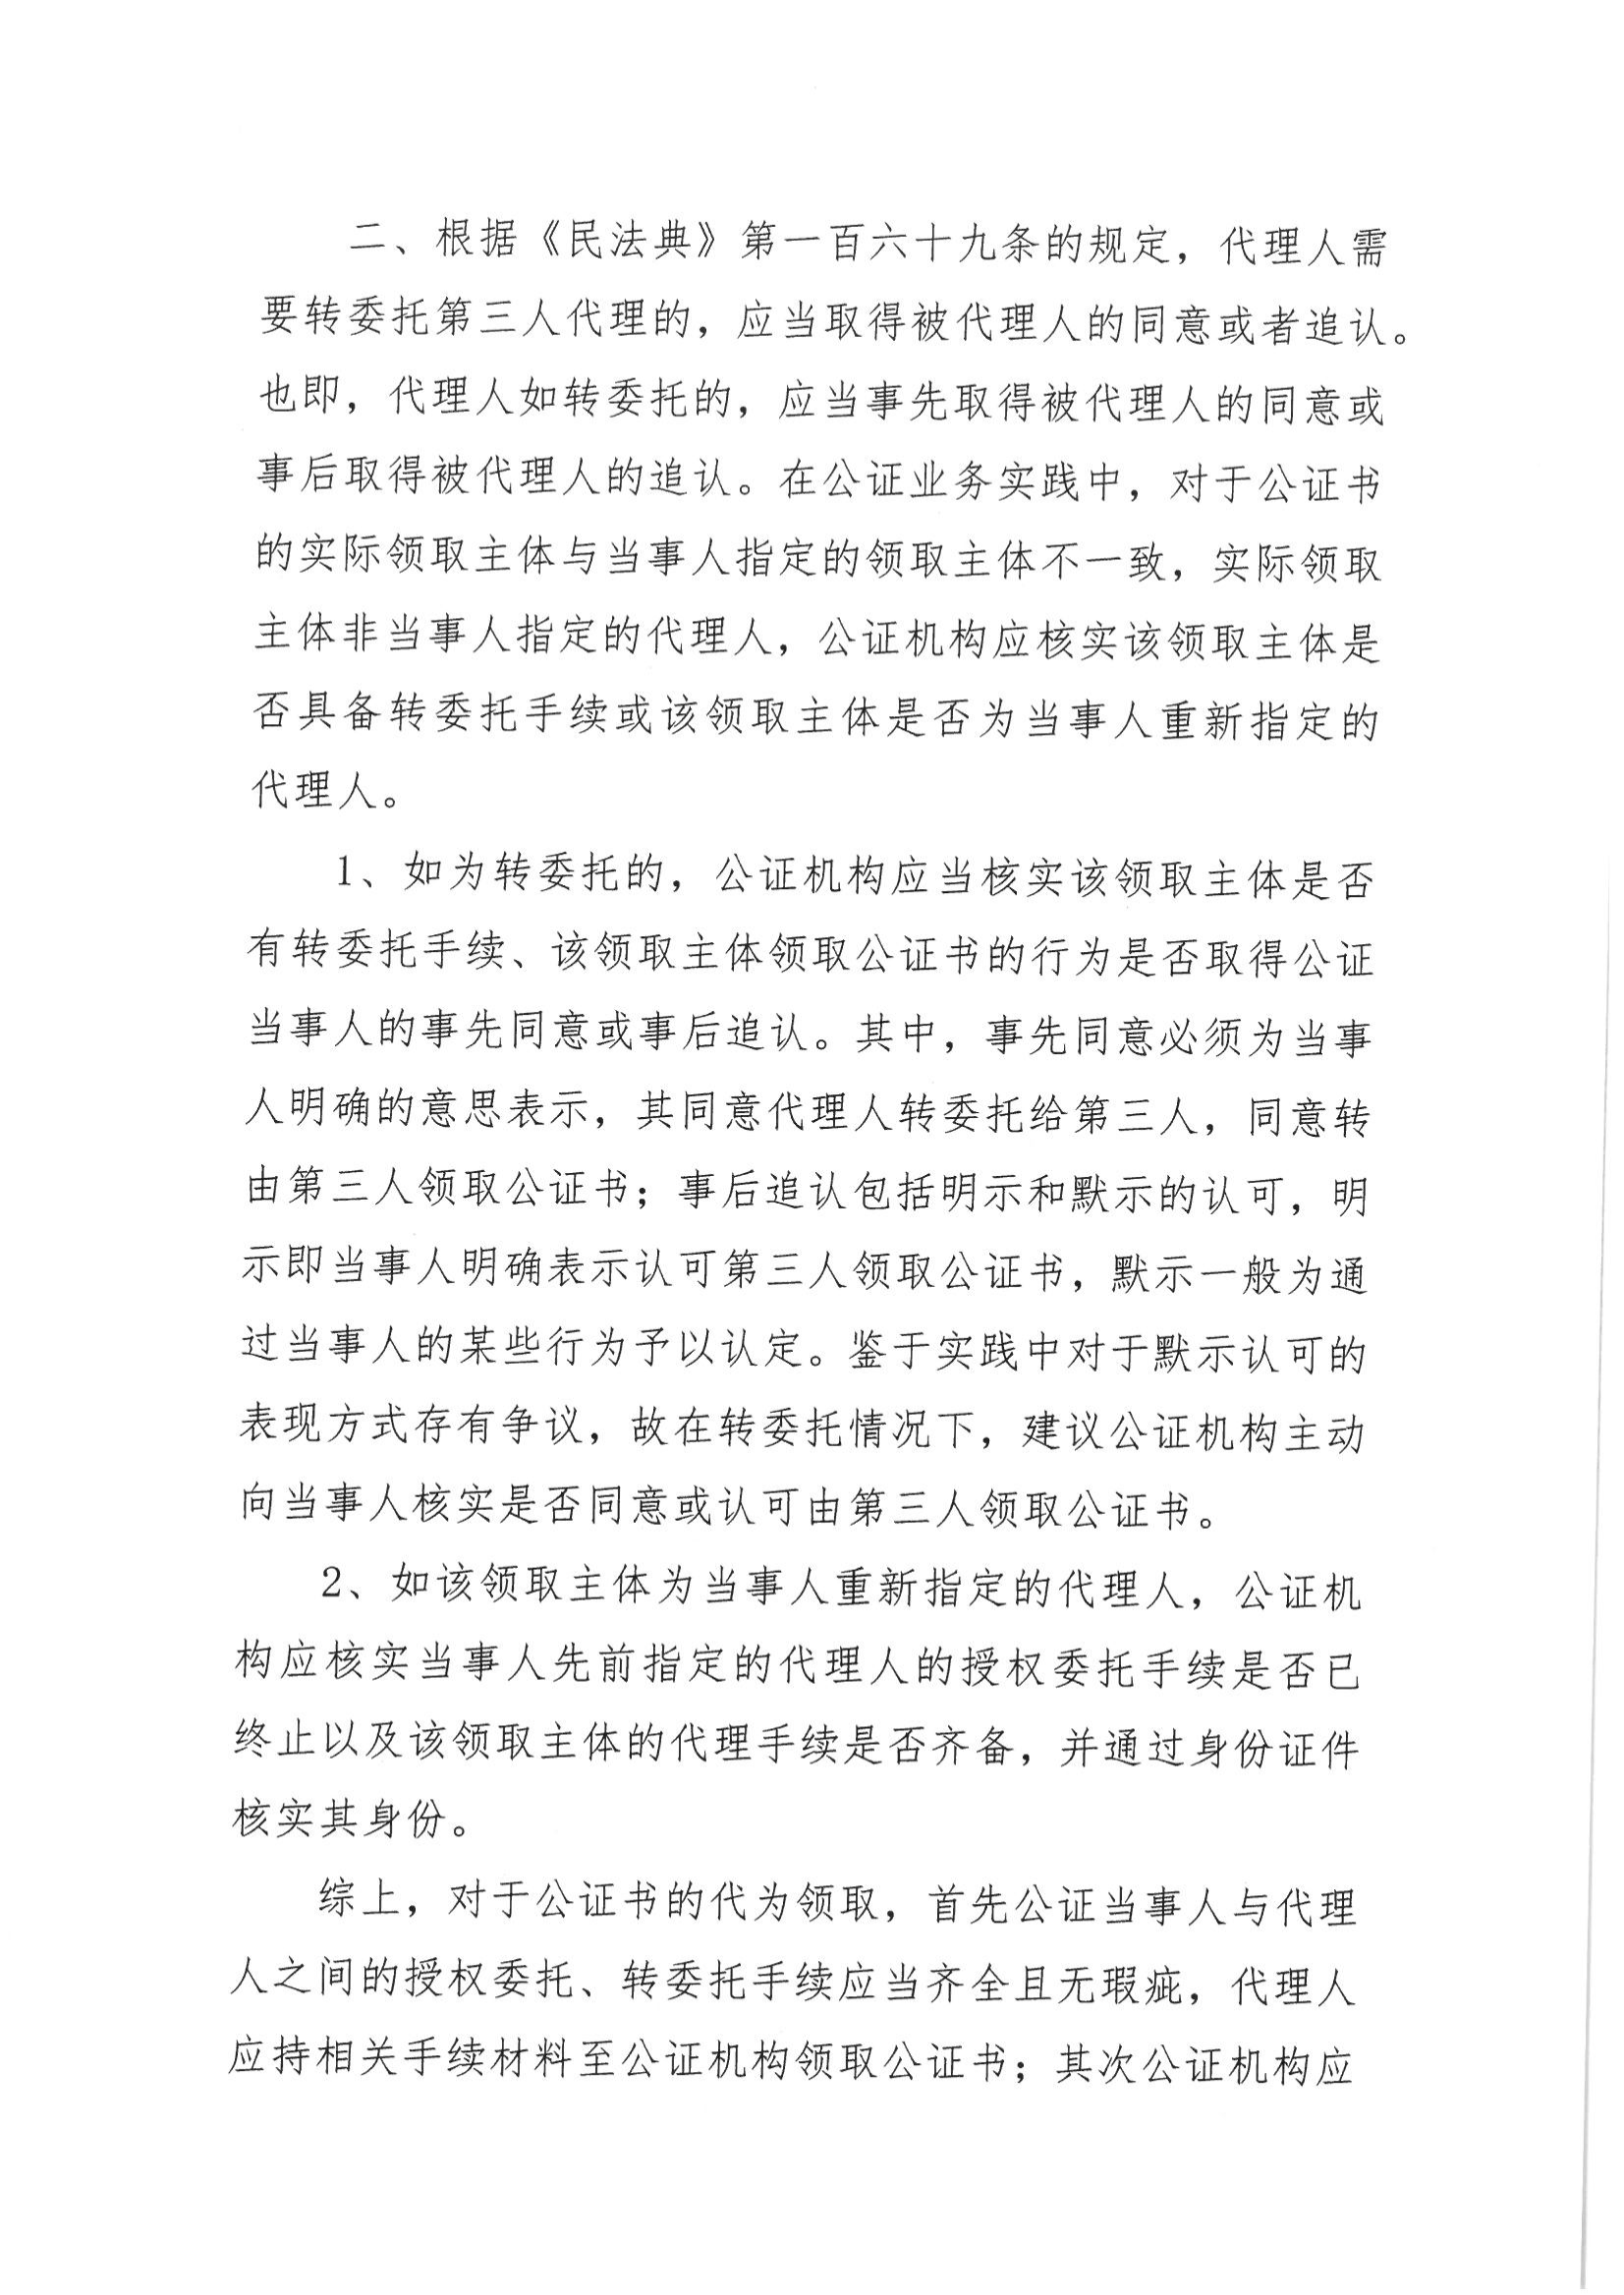 7、北京市公证协会风险提示【2021年第2号】_01